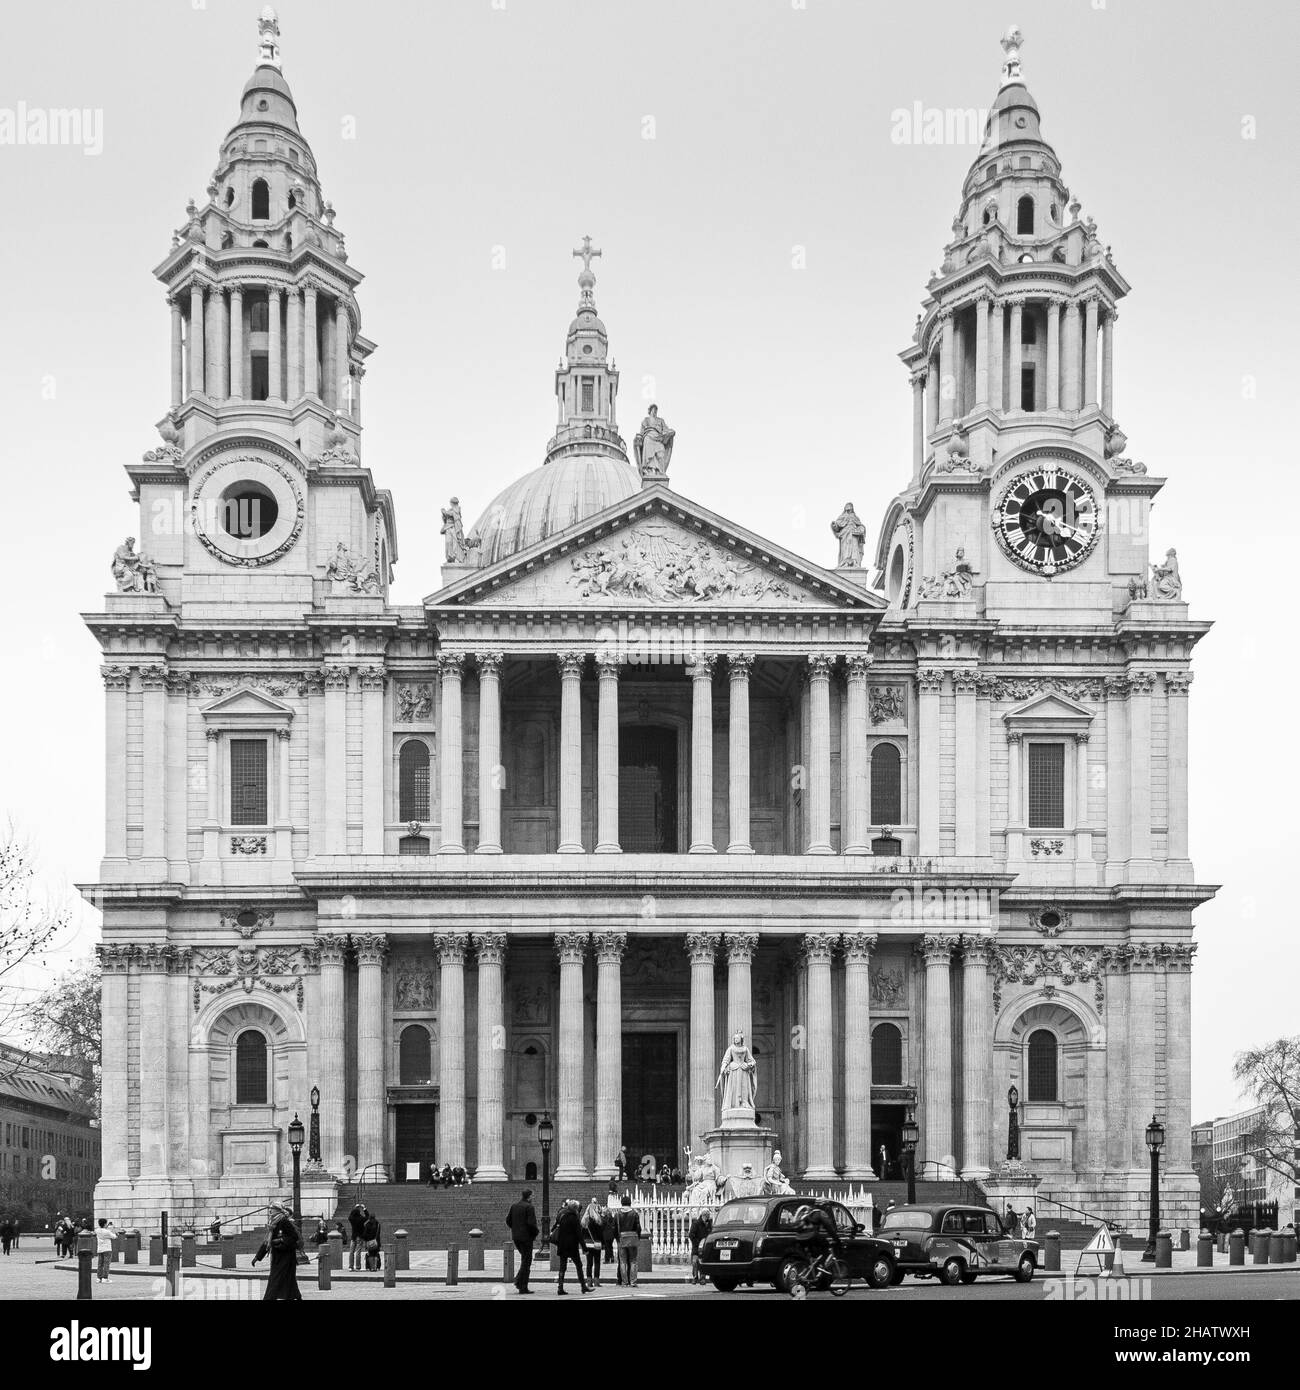 Londres, Royaume-Uni; mars 16th 2011: Façade principale de la cathédrale Saint-Paul en noir et blanc. Banque D'Images